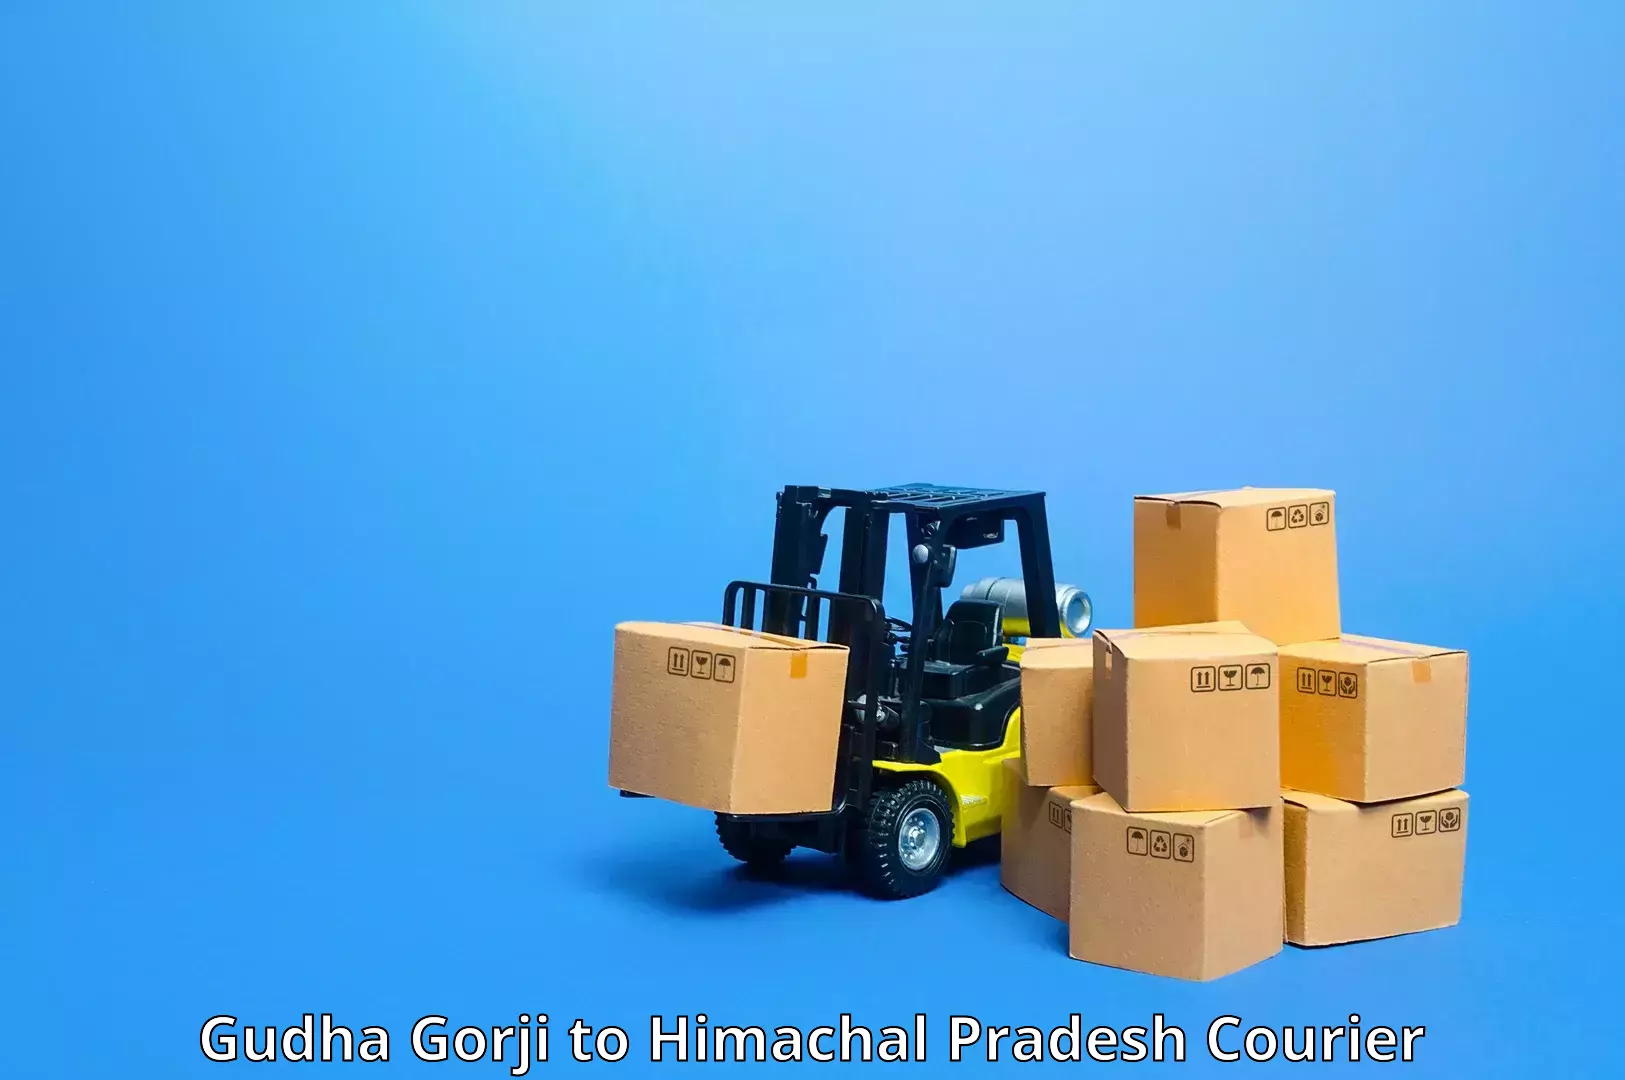 Seamless shipping service in Gudha Gorji to Shahpur Kangra